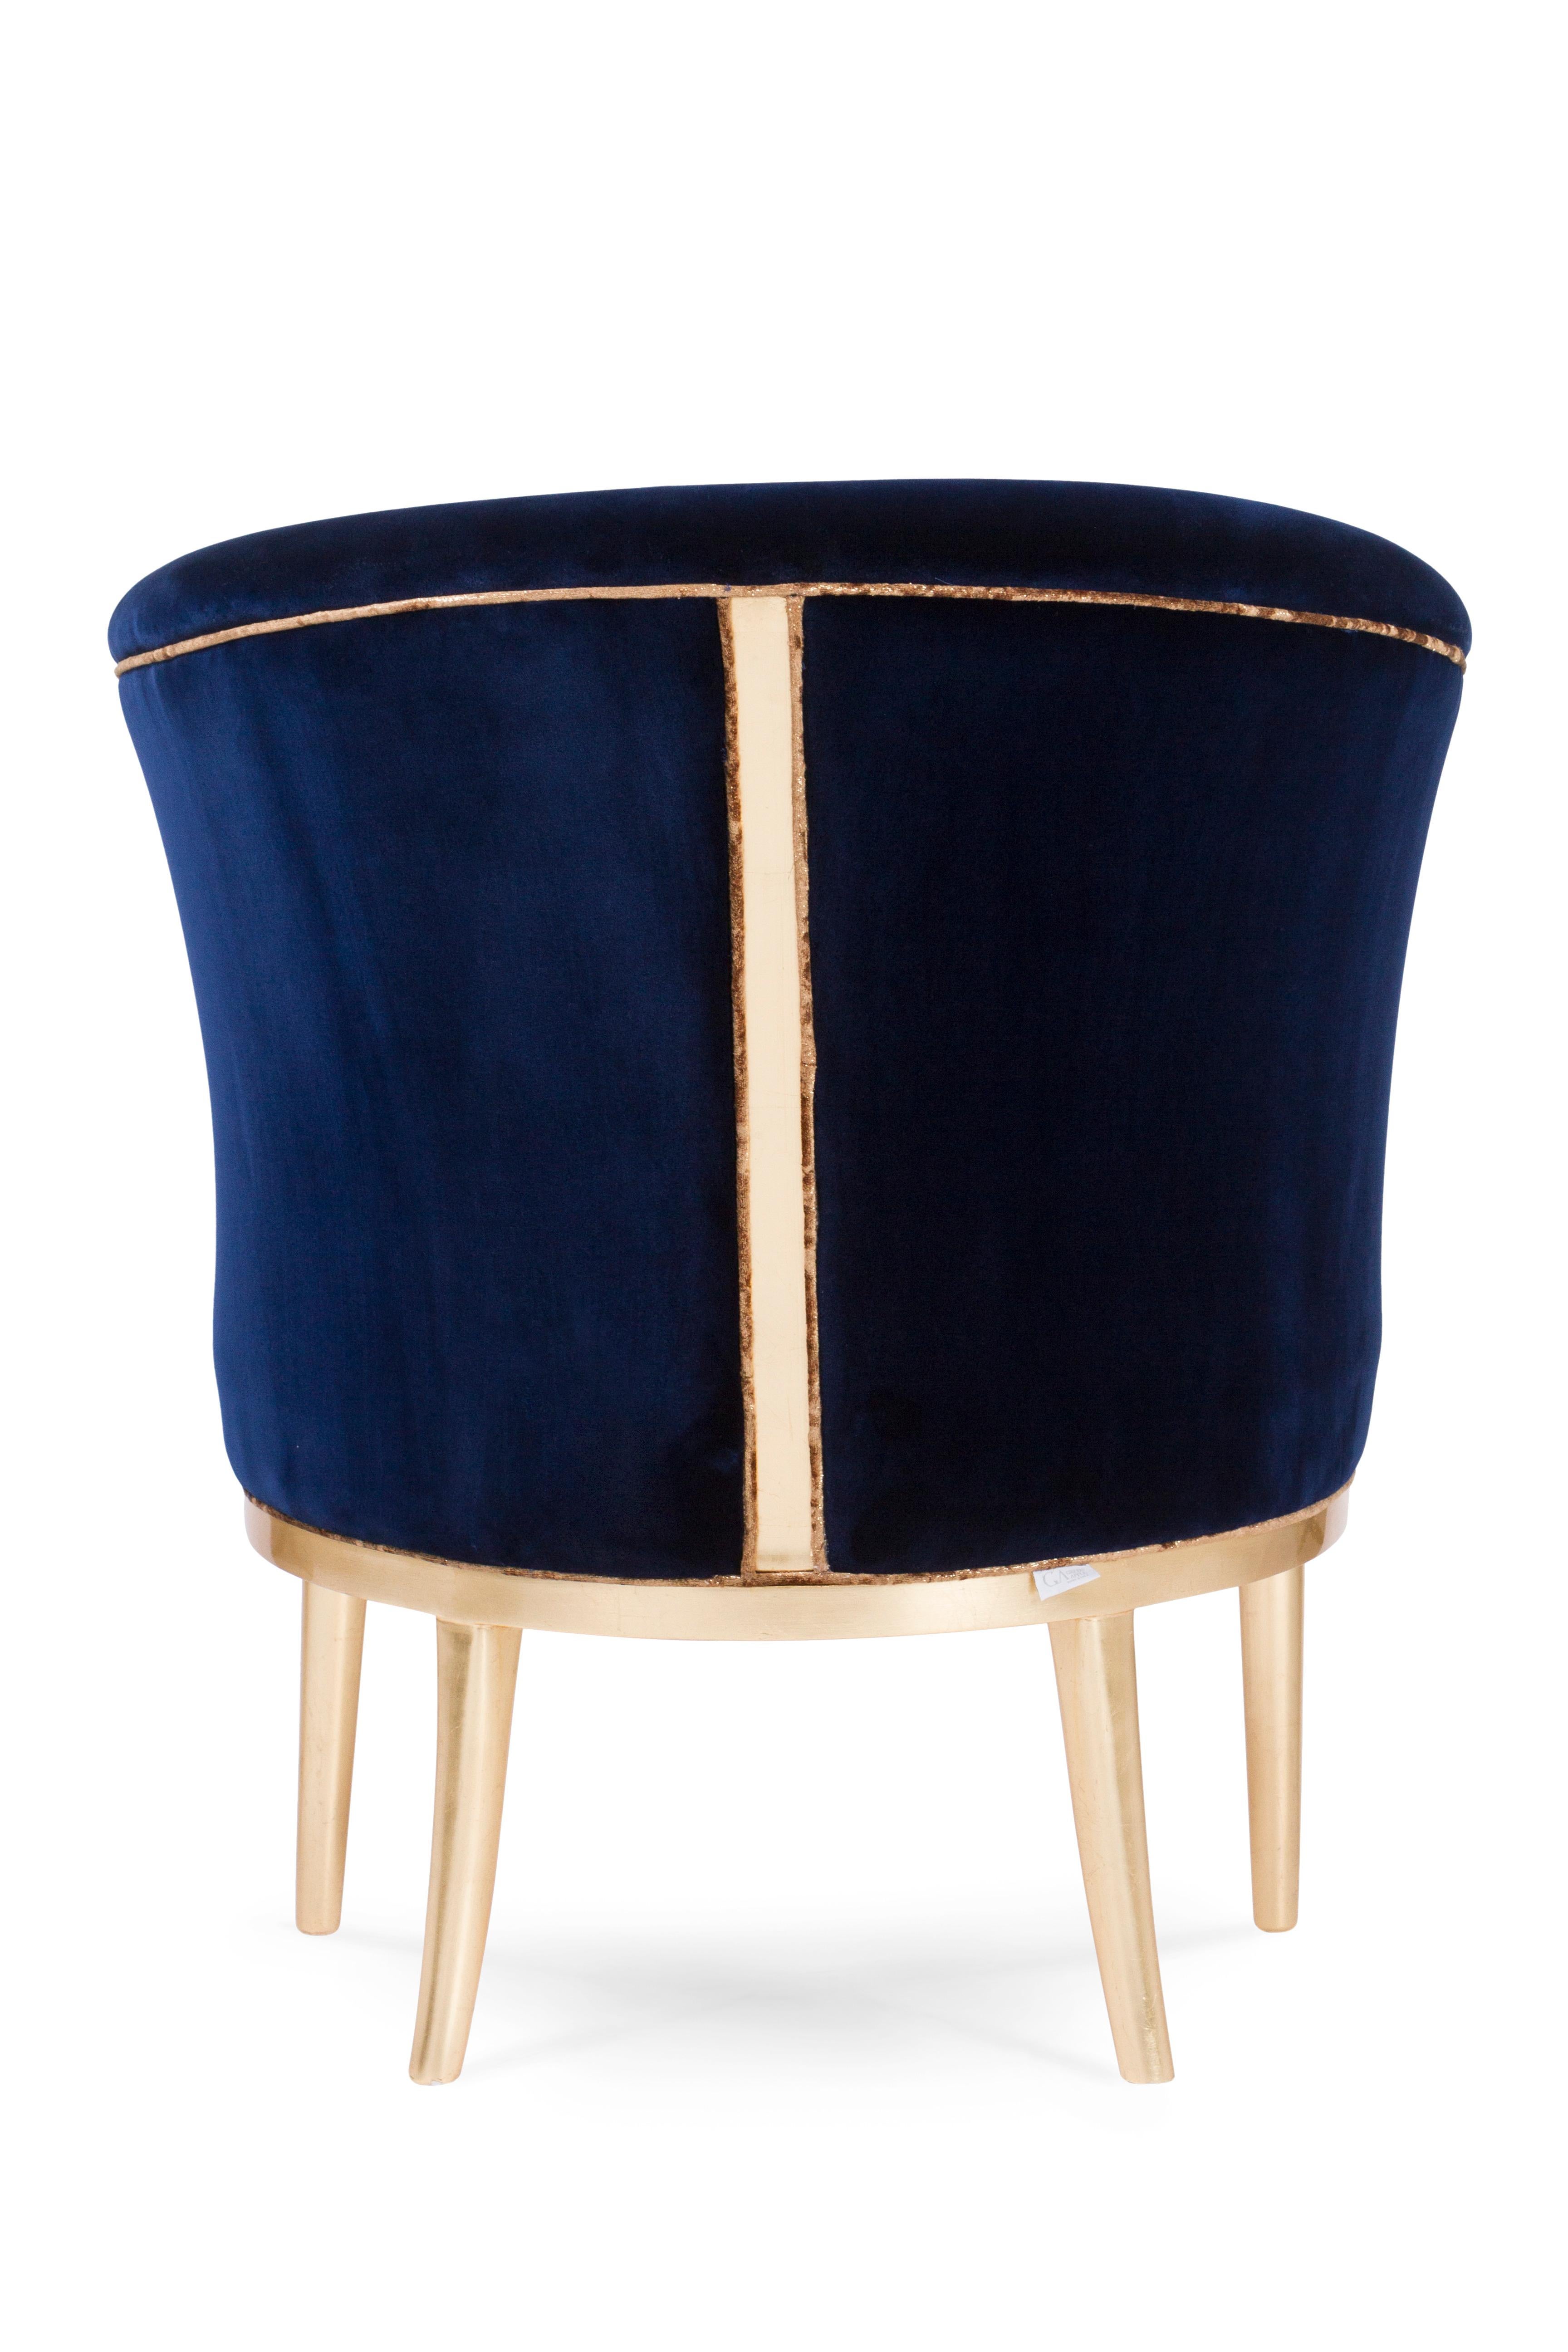 Leather Art Deco Lisboa Lounge Chair Blue Velvet Gold Leaf Handmade Portugal Greenapple For Sale